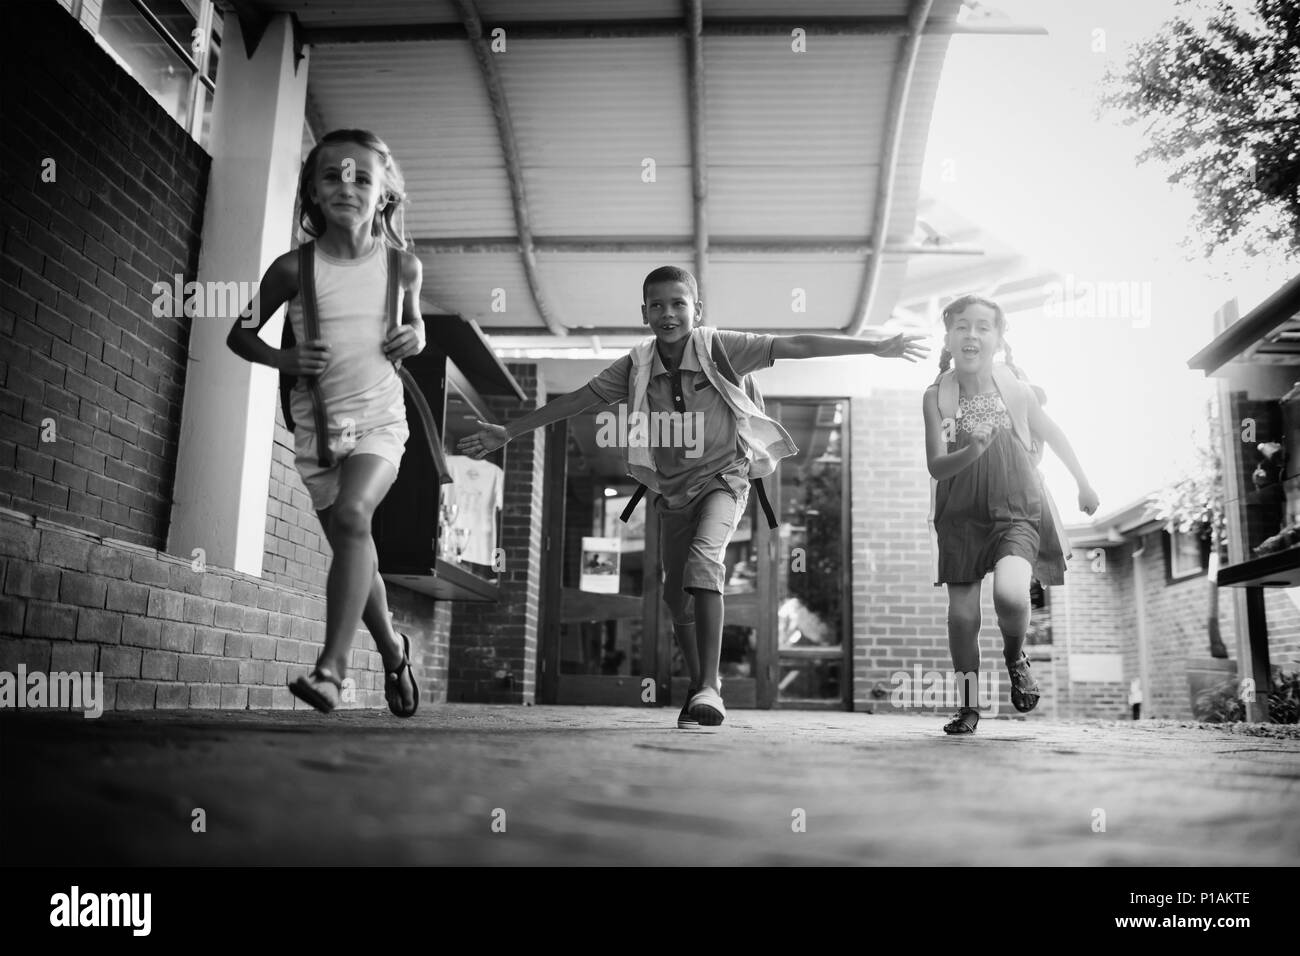 Kids running in school corridor Stock Photo